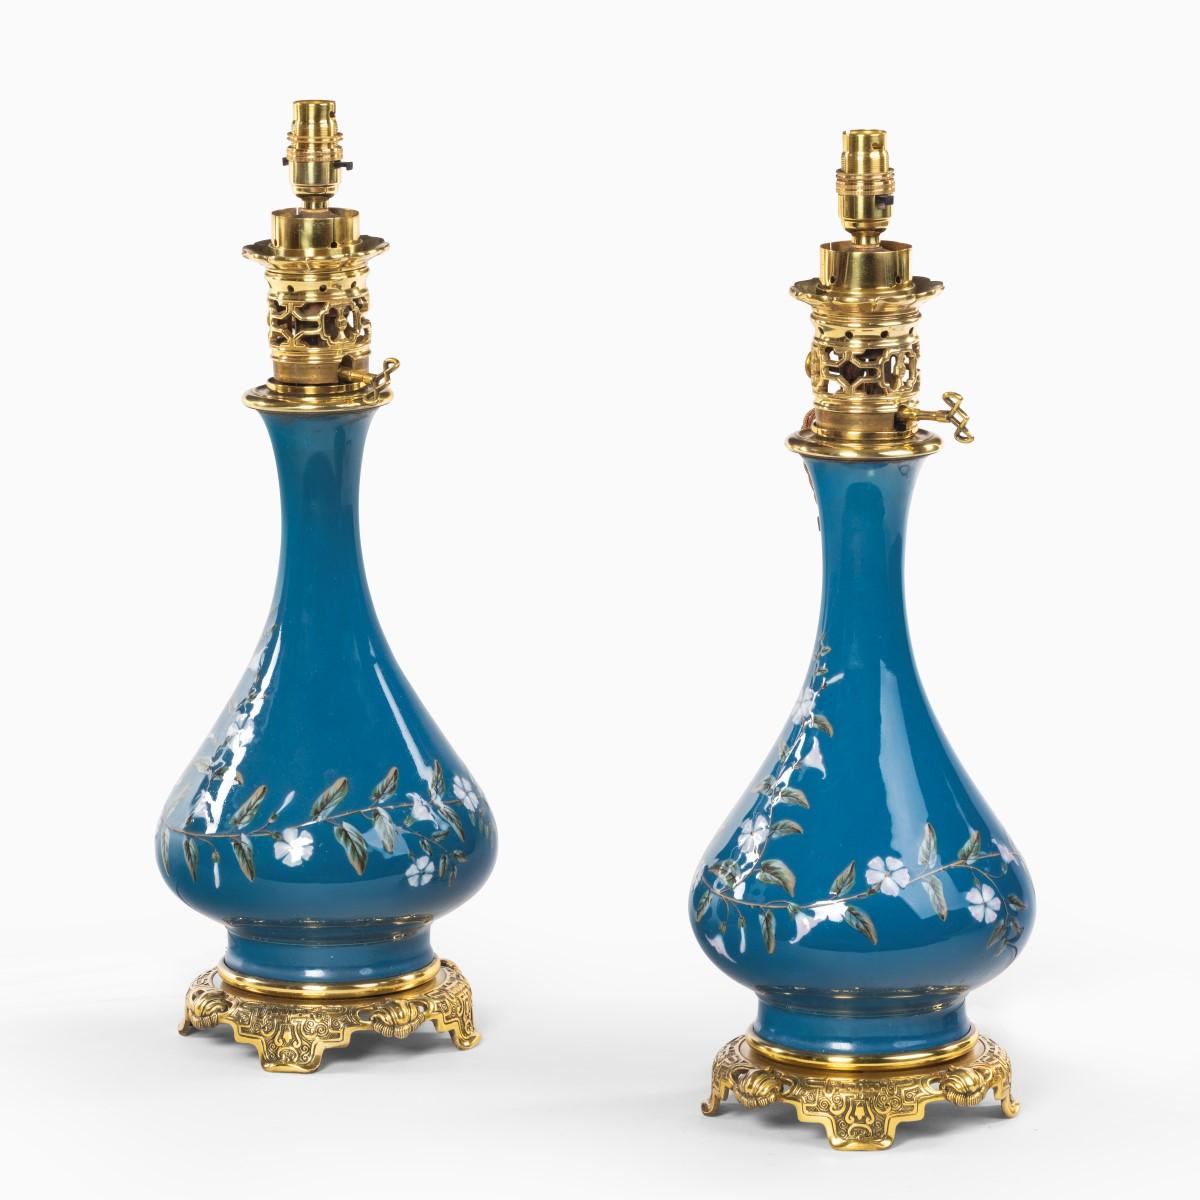 Ein Paar französische Pate-sur-pate-Öllampen aus Keramik, kugelförmig mit applizierten weißen Blüten und Blattranken auf blauem Grund, mit hochwertigen Ormolu-Beschlägen im Chinoiserie-Stil, jetzt auf Elektrizität umgestellt, CIRCA 1890.

  